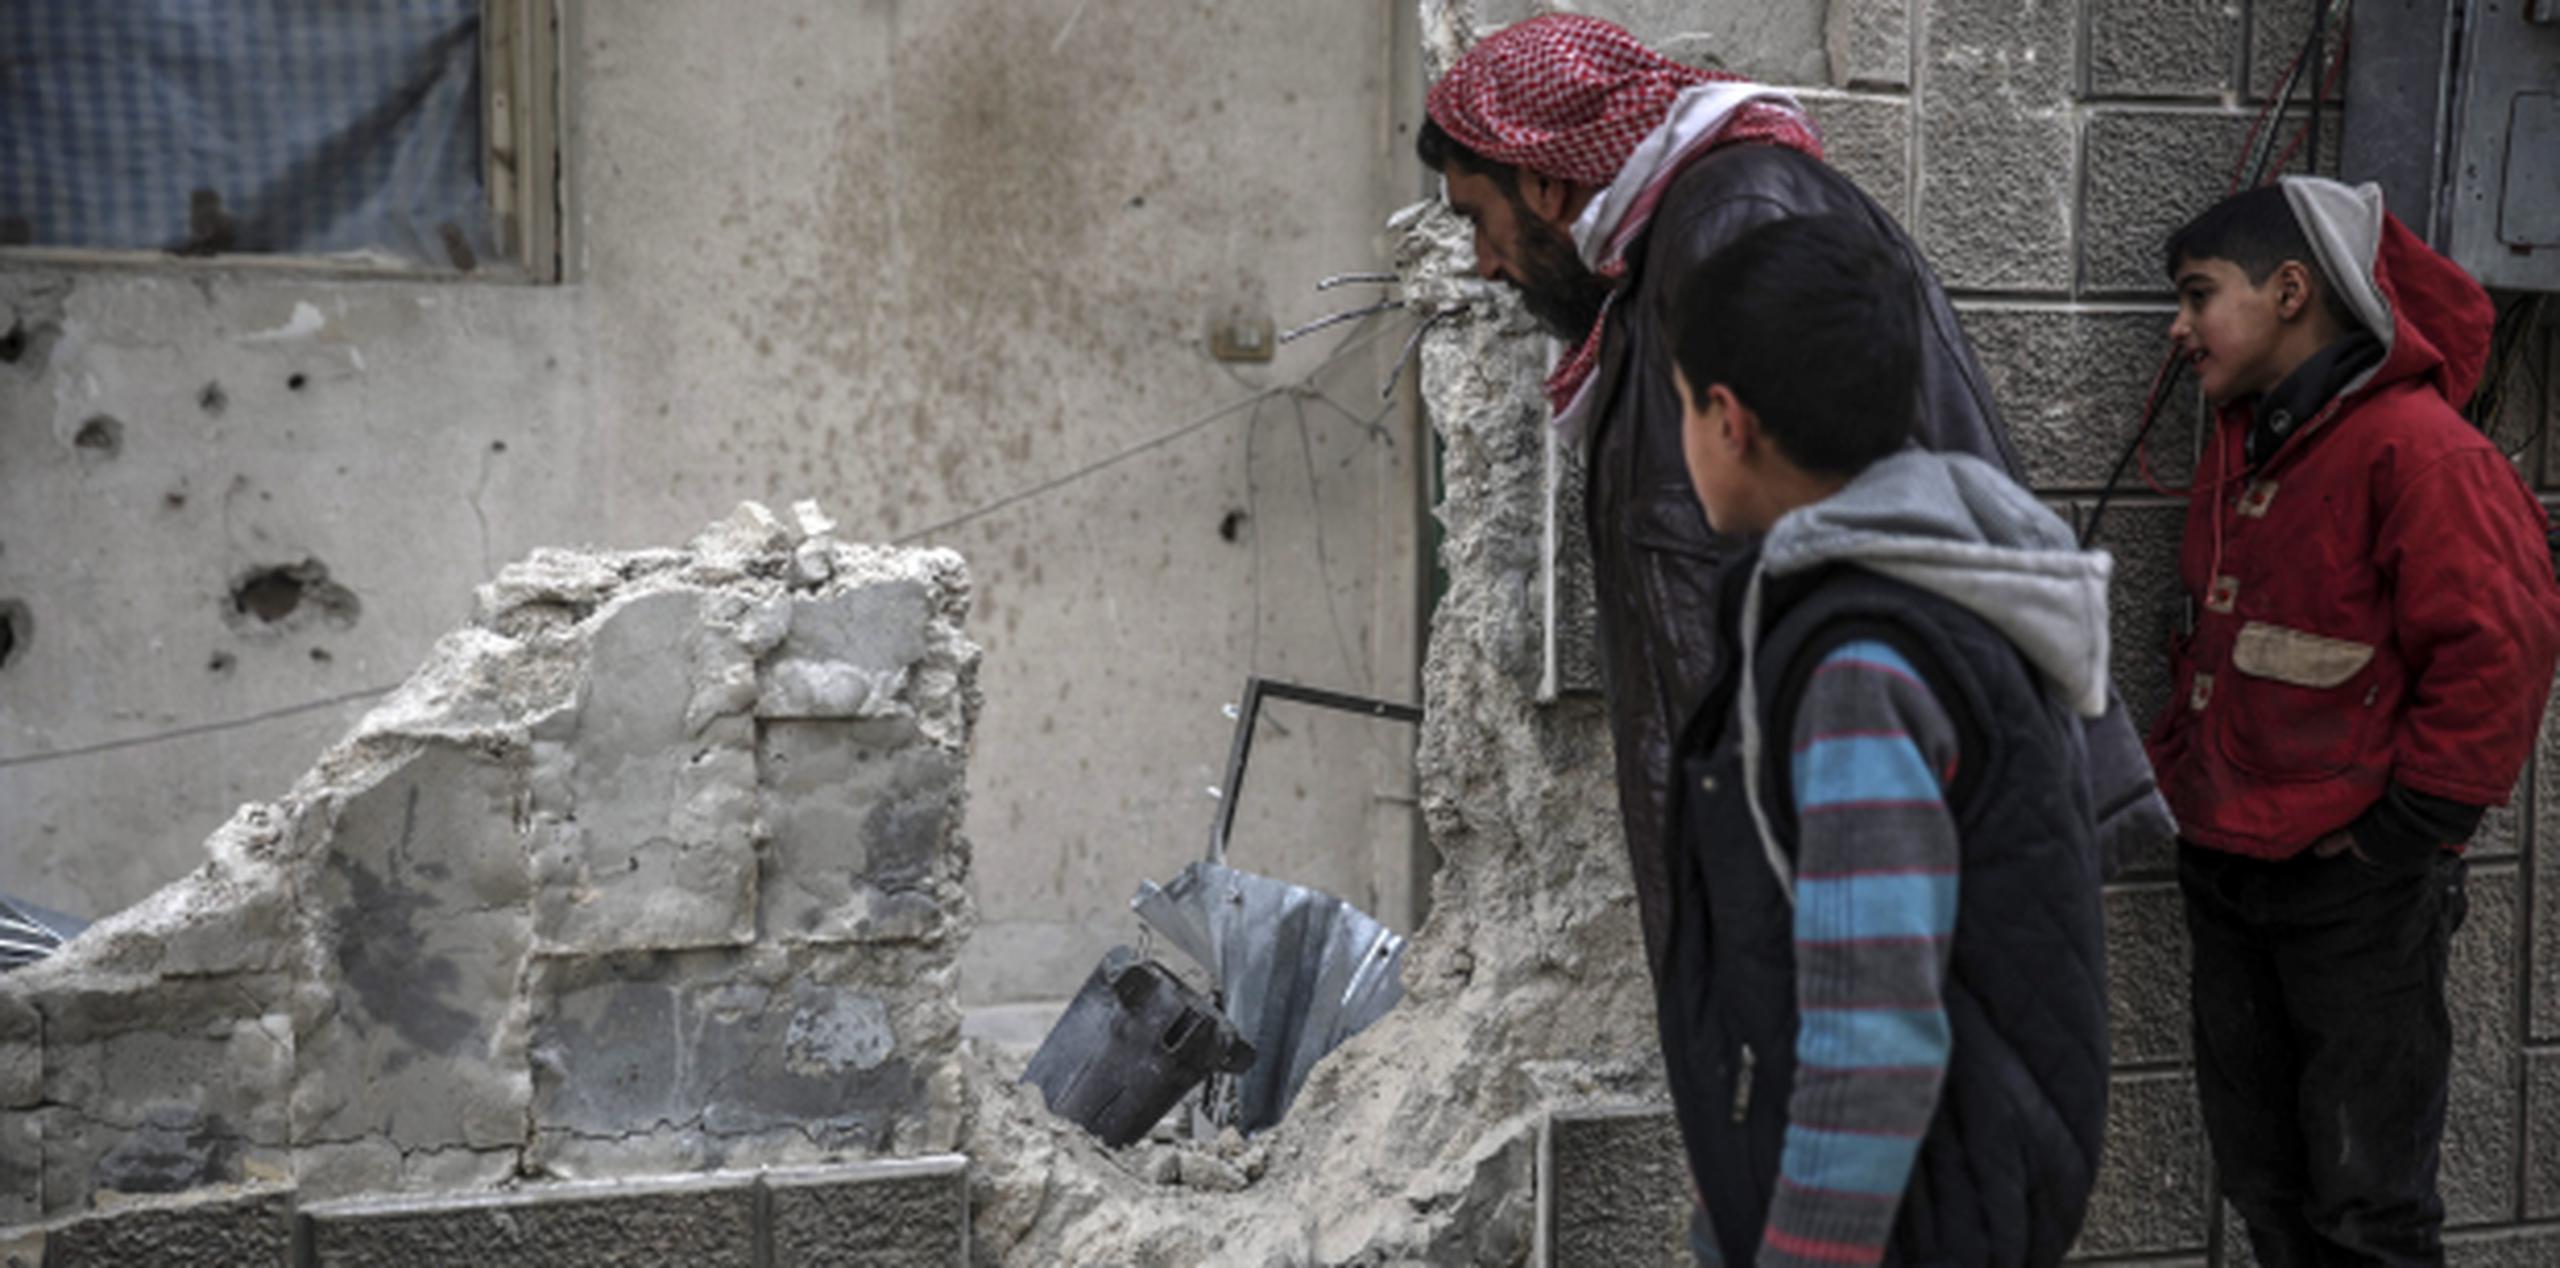 Curiosos inspeccionan los restos de una bomba tras un ataque aéreo en Douma, a las afueras de Damasco. (EFE)